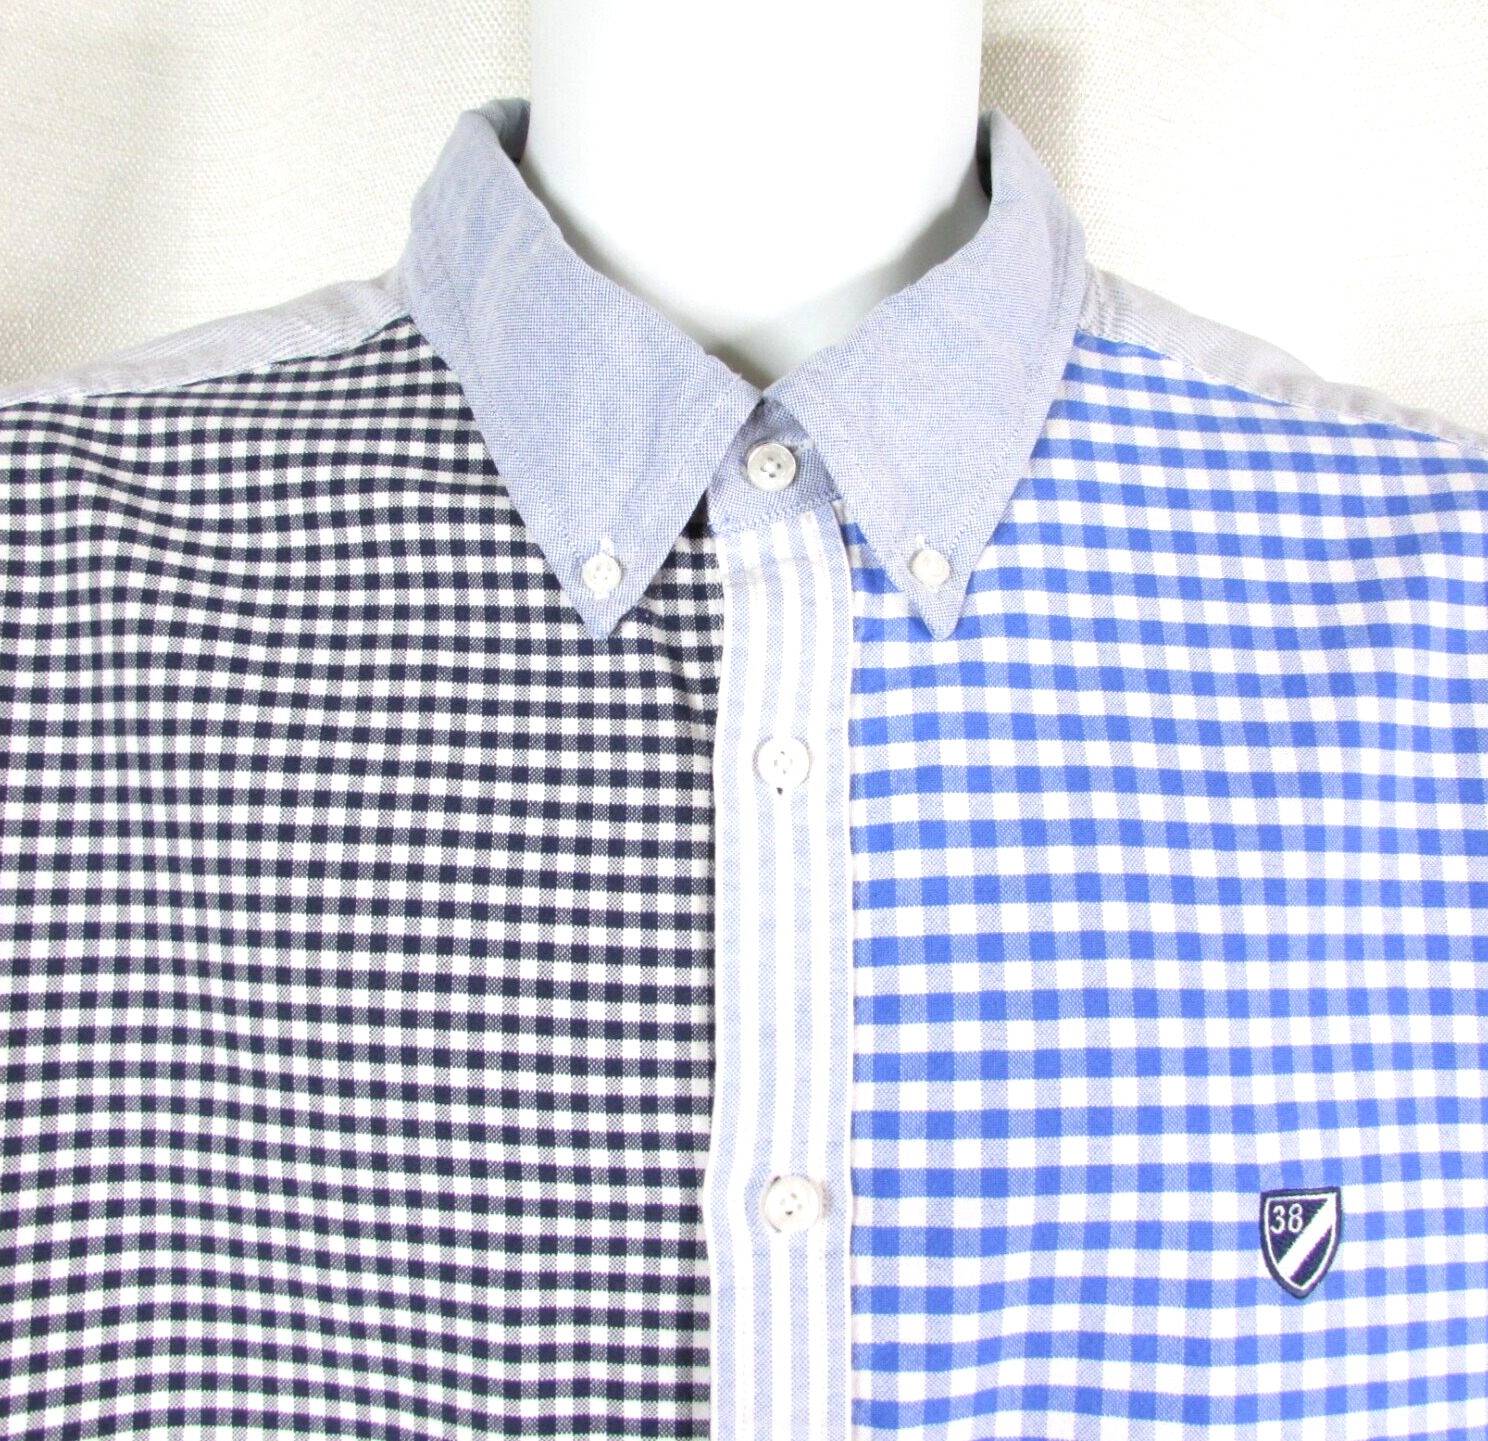 Cremieux Classics Shirt Size XXL Contrast Check Stripe Color Block Button FLAWS